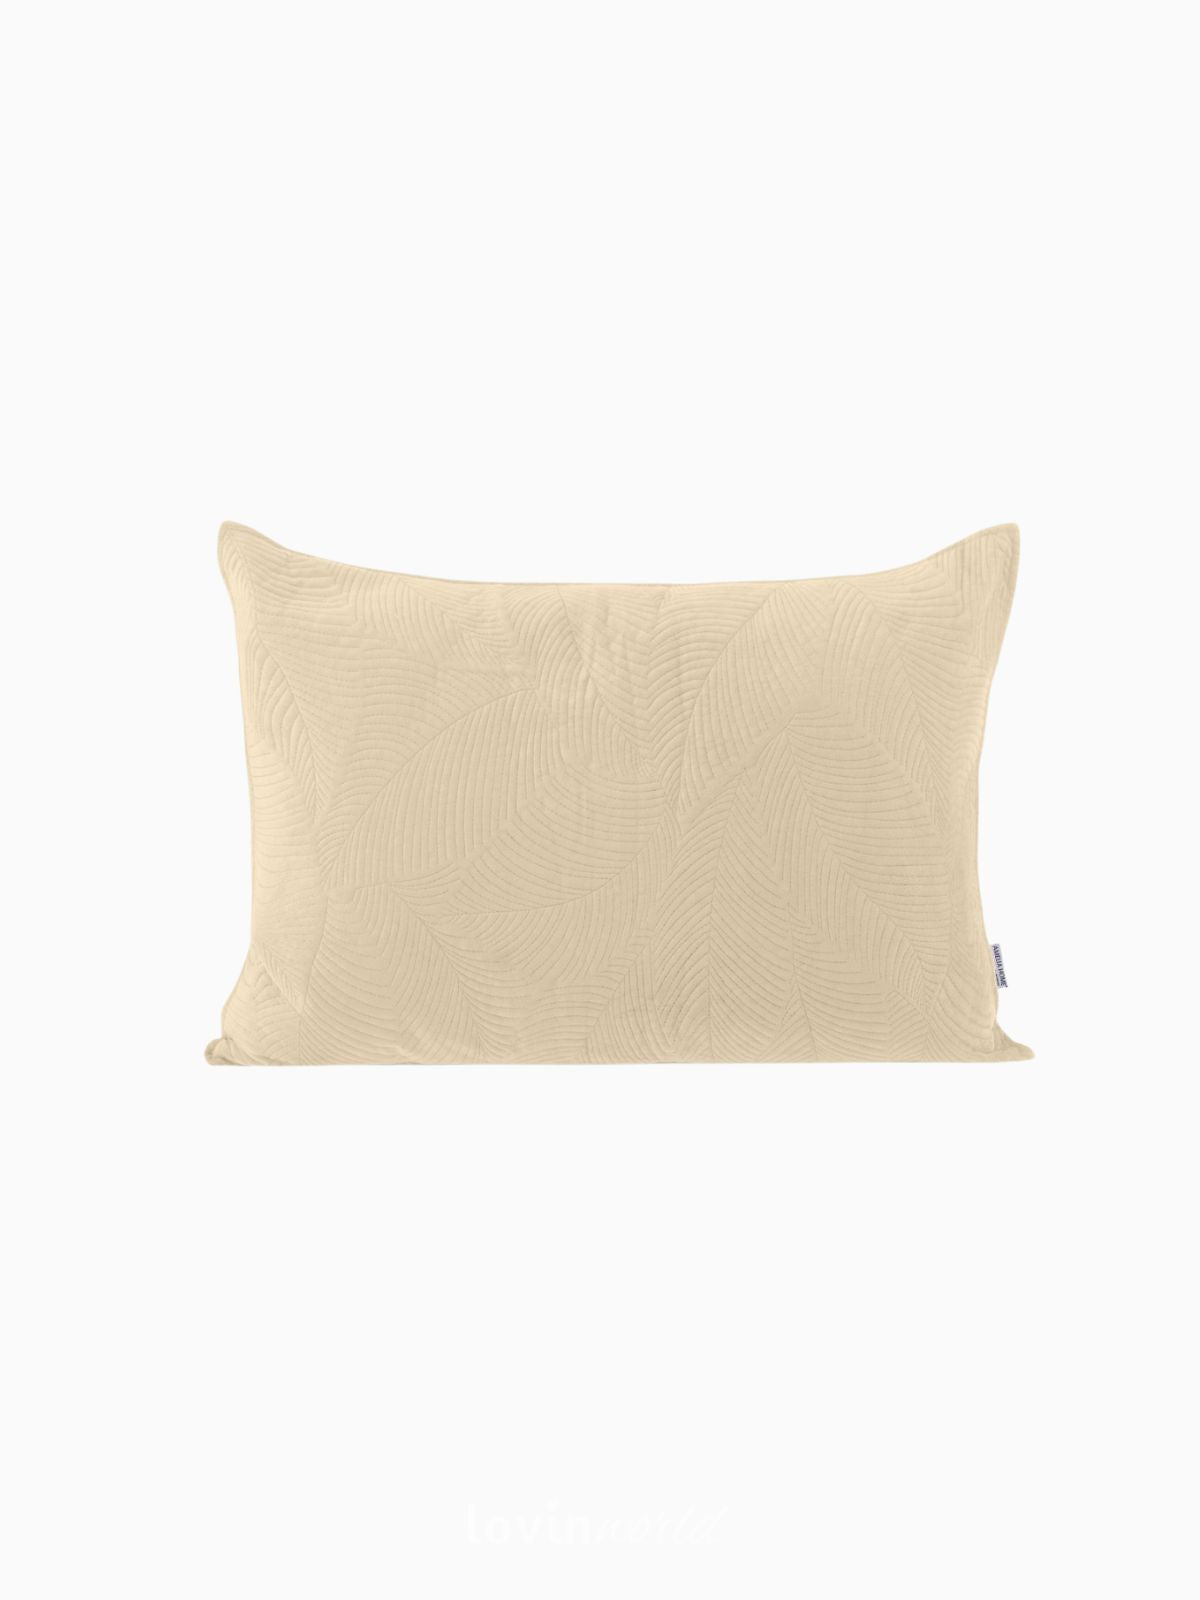 Cuscino decorativo in velluto Palsha, colore beige scuro 50x70 cm.-1